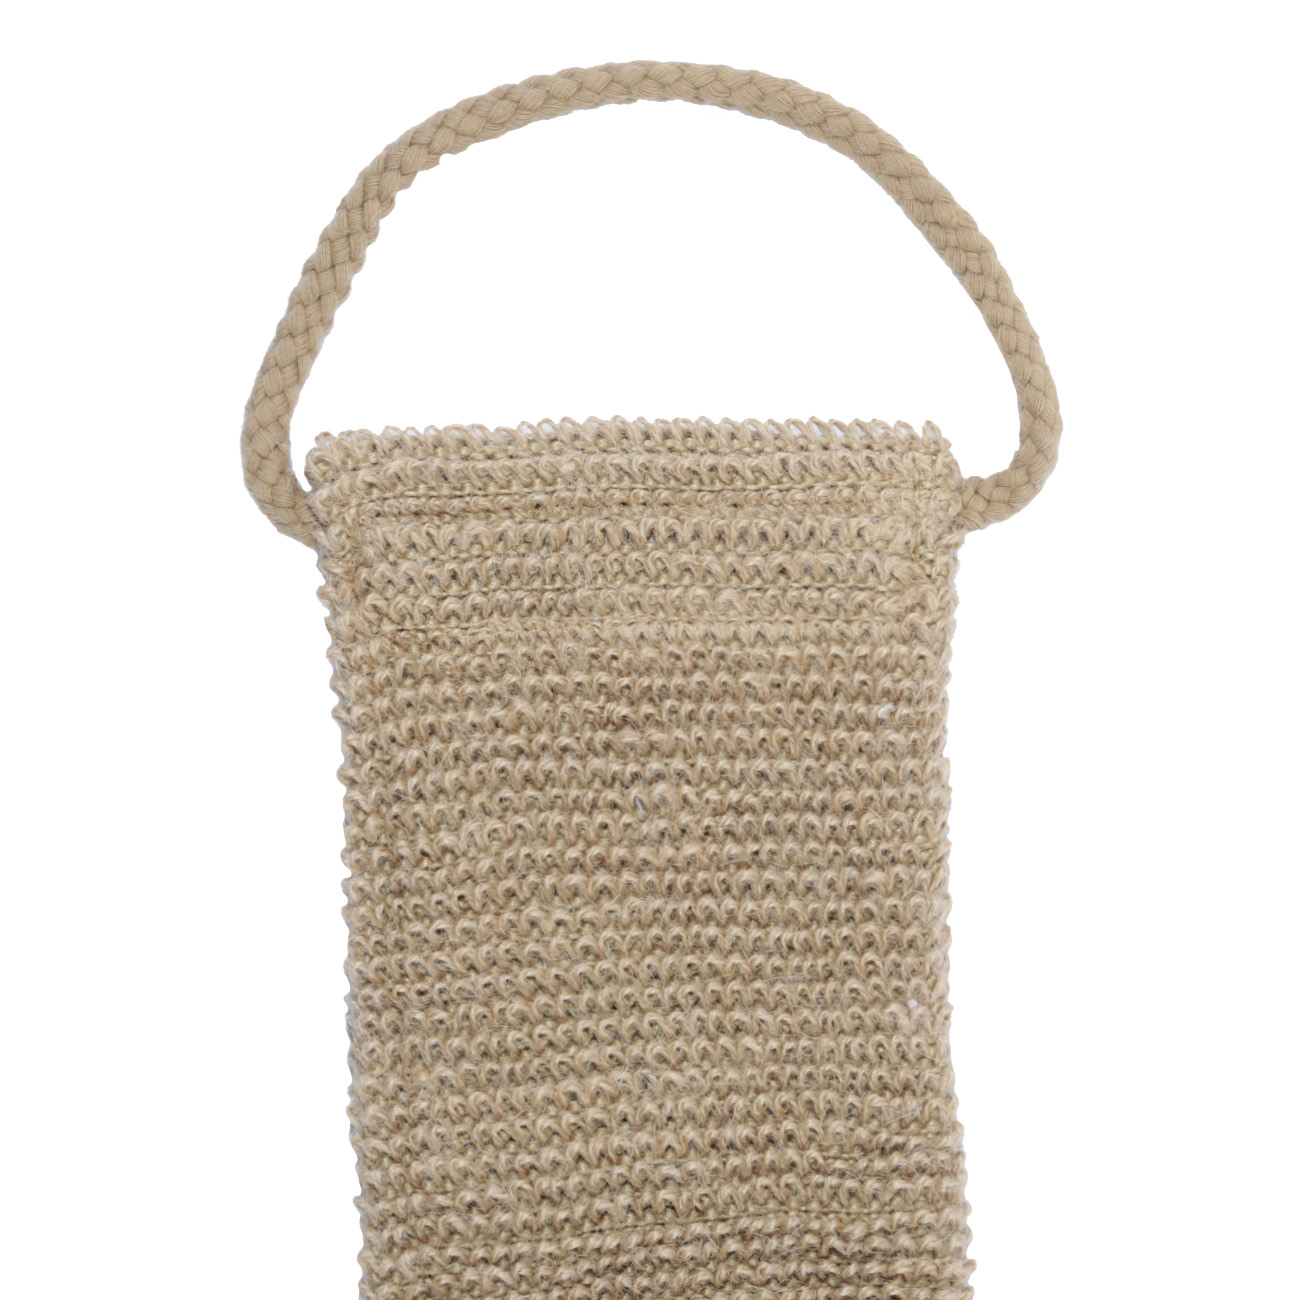 Мочалка-лента для мытья тела, 10х58 см, конопляное волокно, бежевая, Eco life изображение № 2